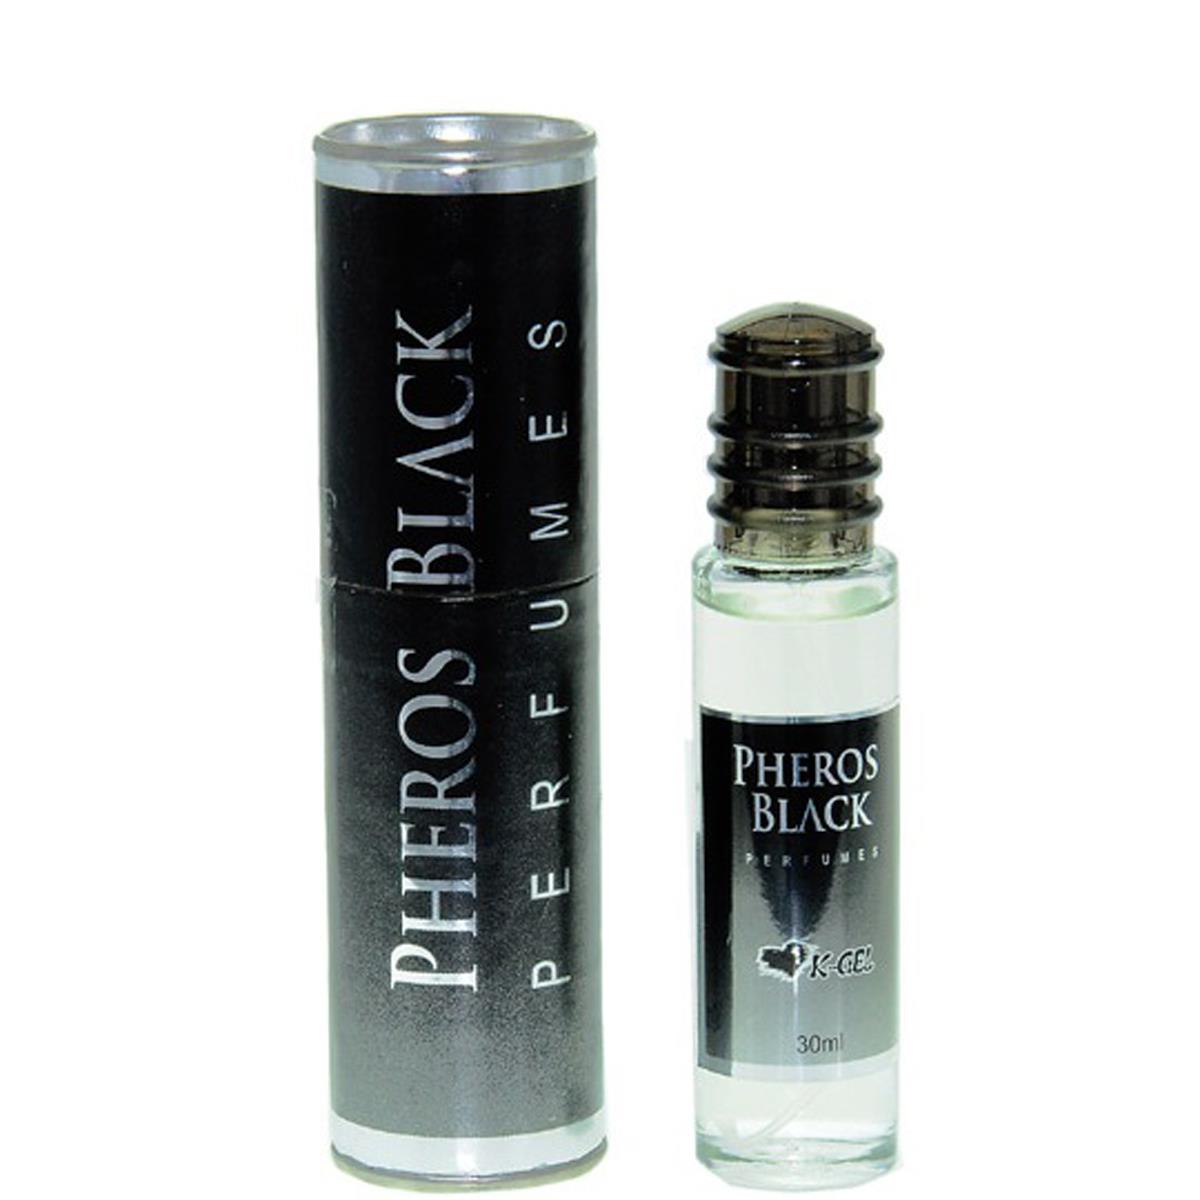 Pheros Black 30ml K-gel